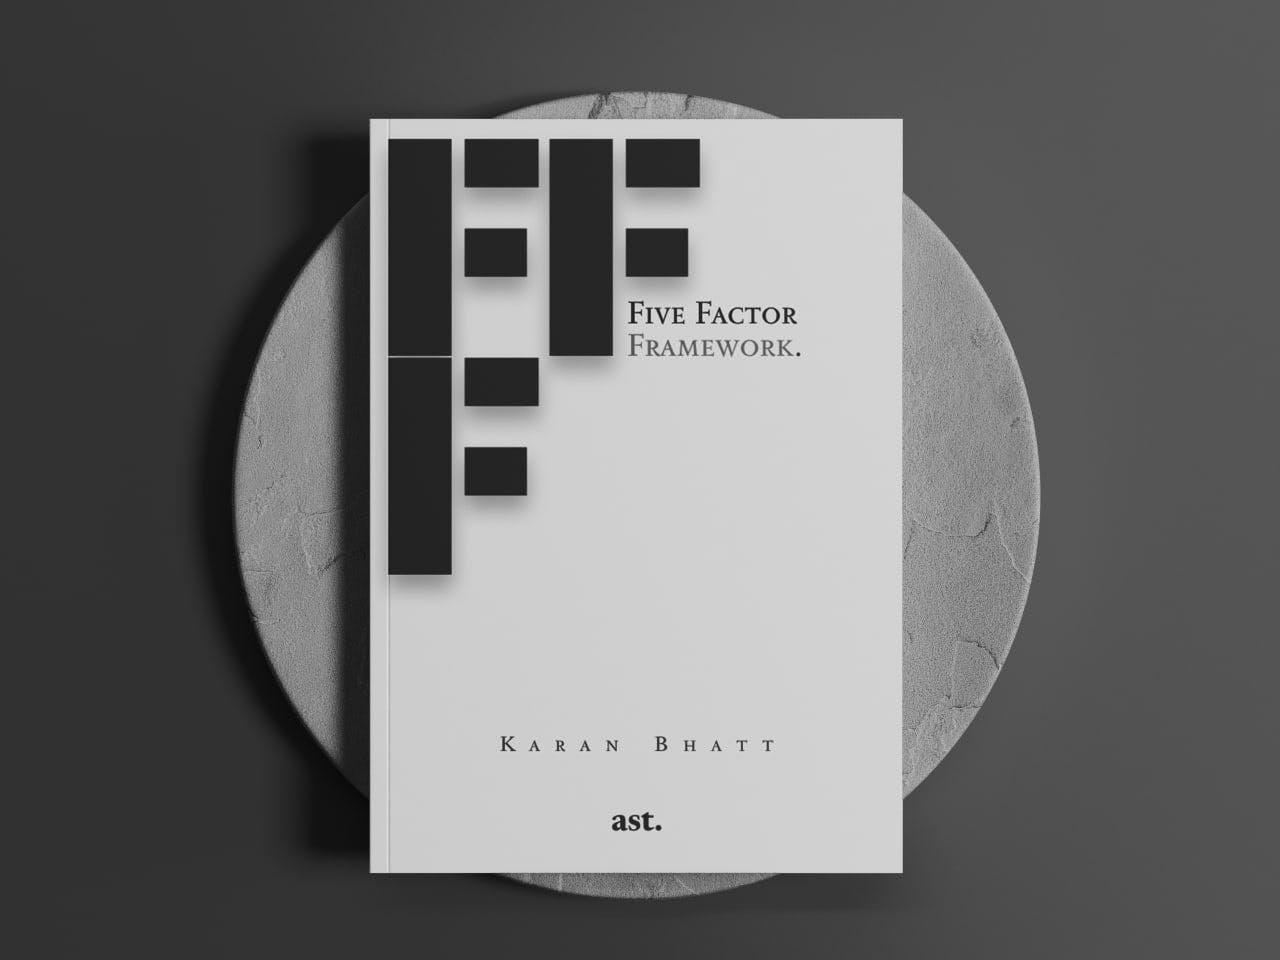 FFF book cover